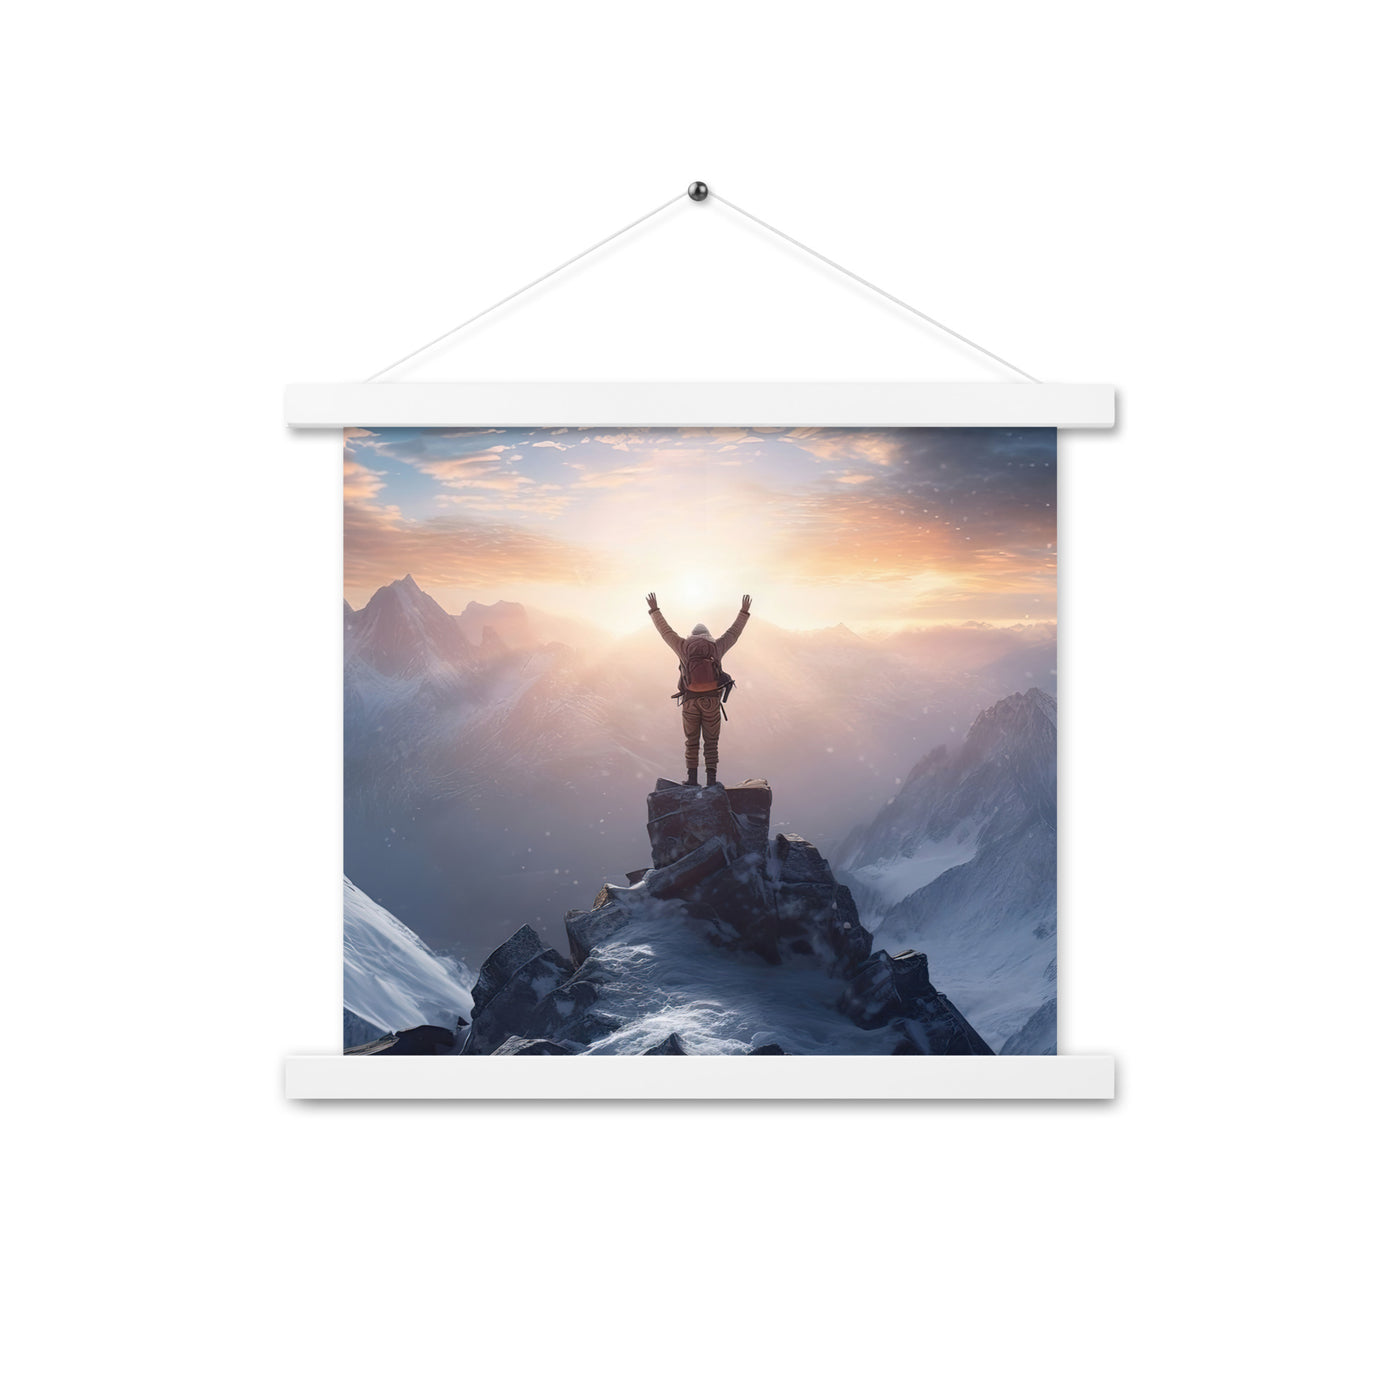 Mann auf der Spitze eines Berges - Landschaftsmalerei - Premium Poster mit Aufhängung berge xxx 35.6 x 35.6 cm